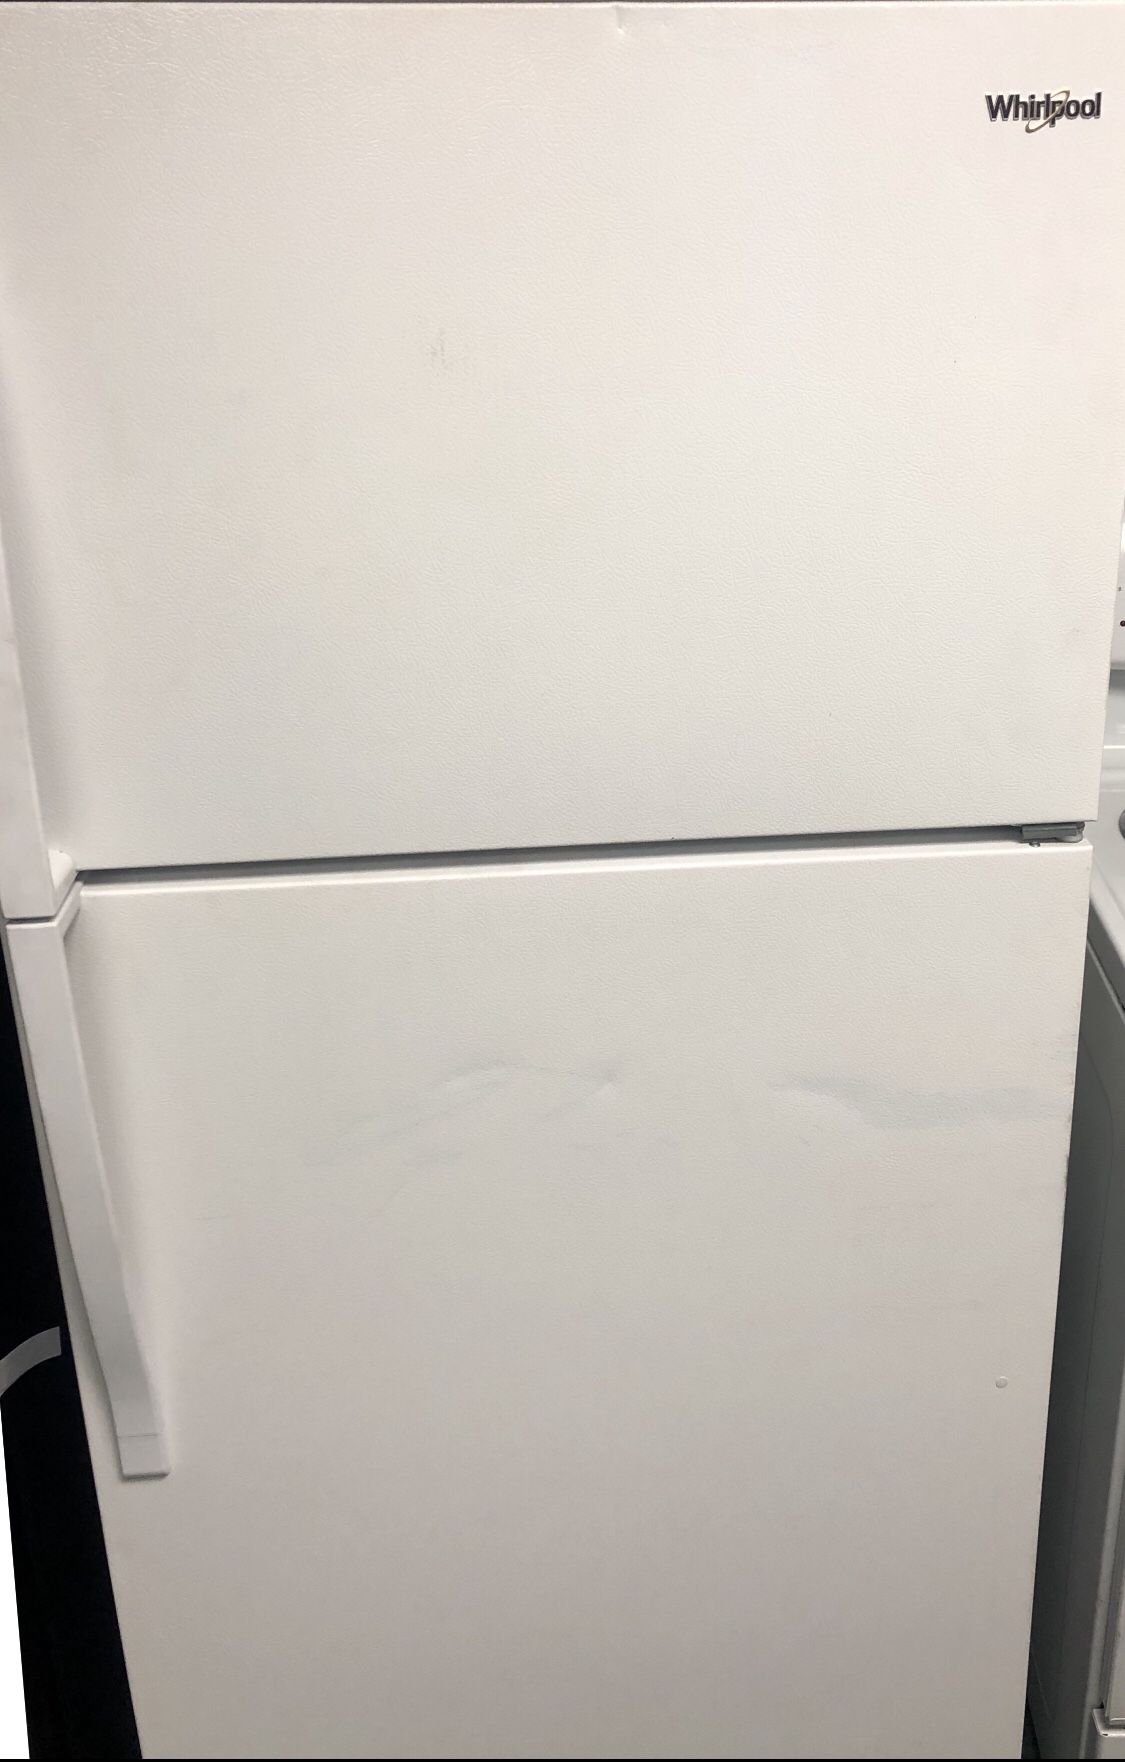 Whirlpool refrigerator new never used